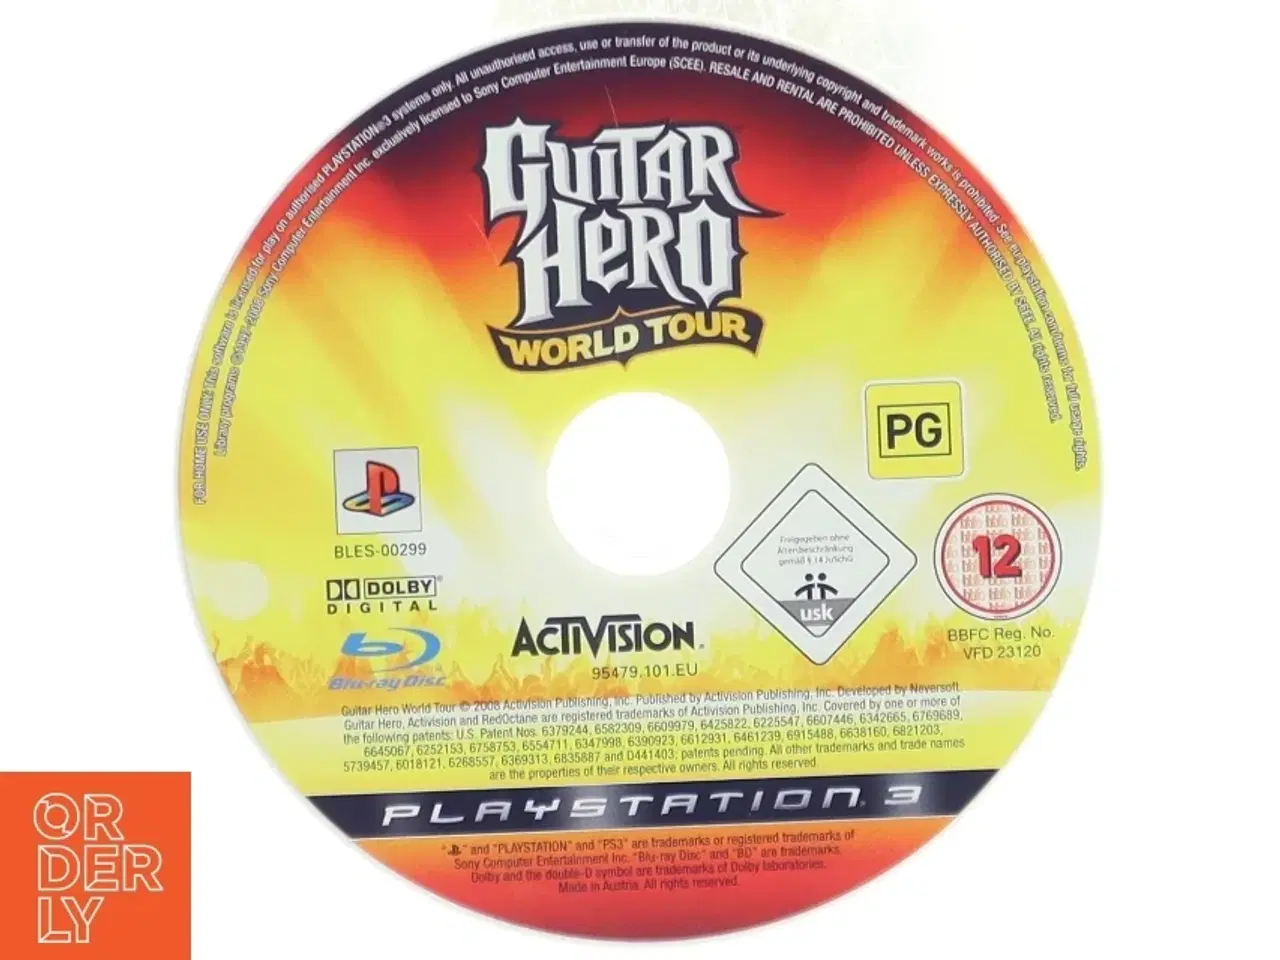 Billede 1 - Guitar Hero World Tour PS3 spil fra Activision